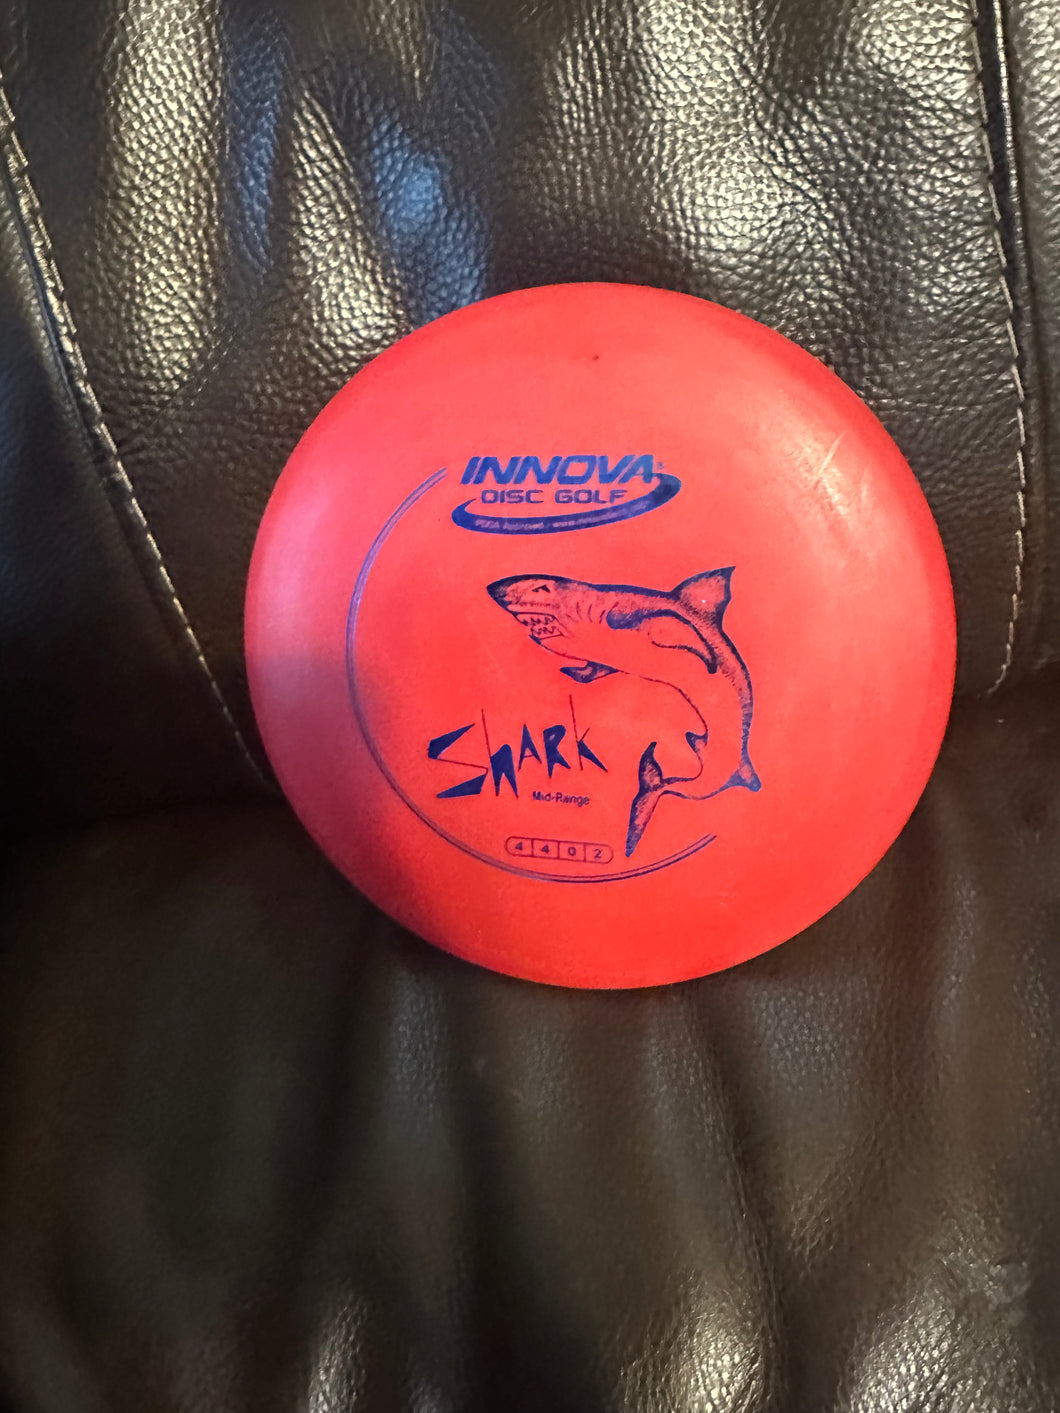 Innova Disc Golf Shark Midrange 145g